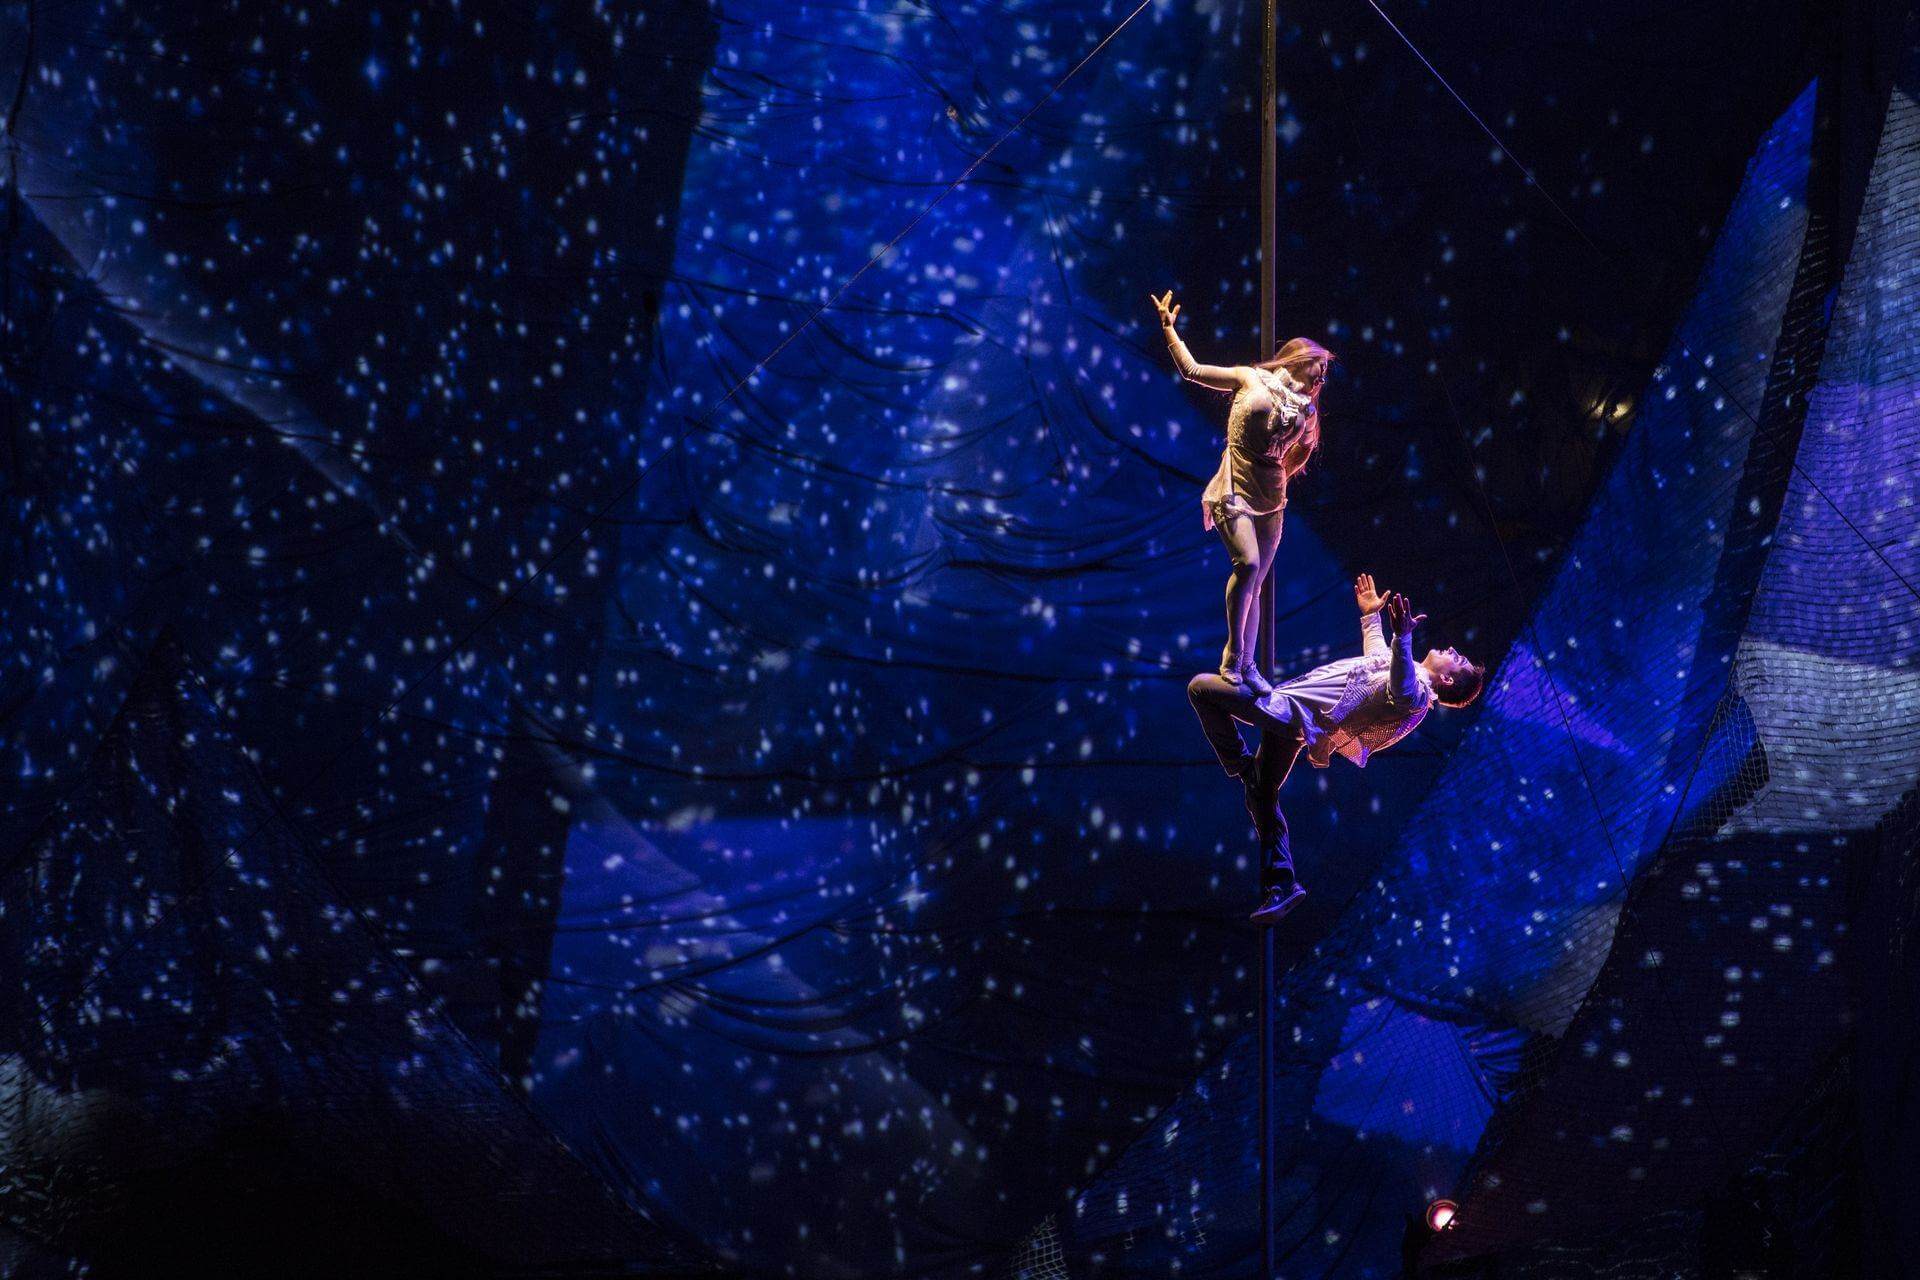 Scalada by Cirque du Soleil 2013: Representació arquitectònica a partir d'una figura humana